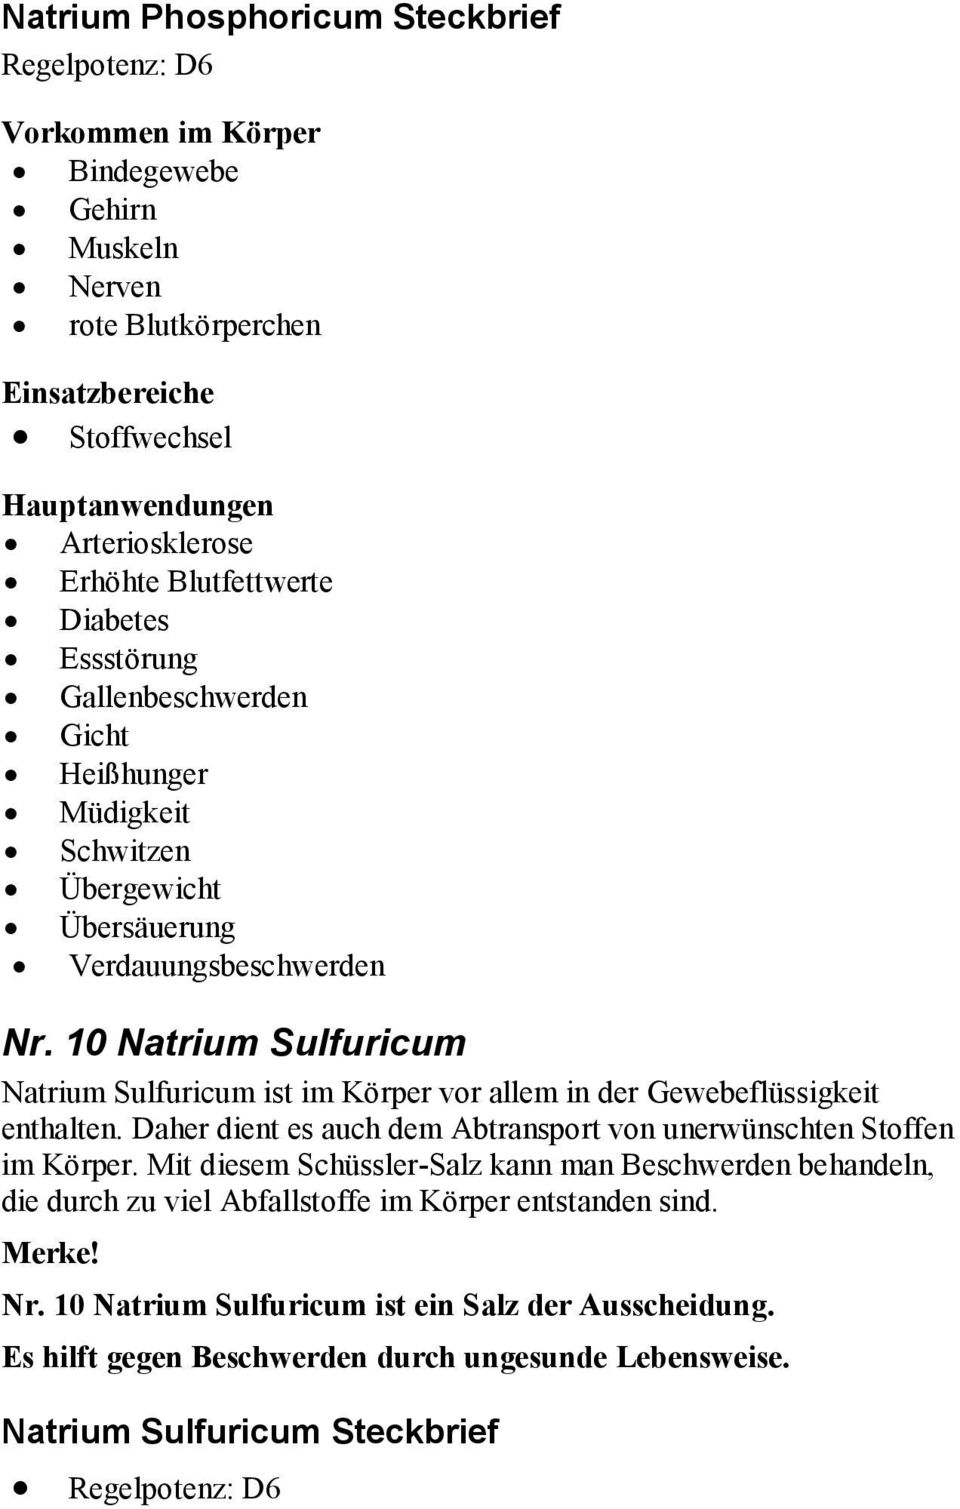 10 Natrium Sulfuricum Natrium Sulfuricum ist im Körper vor allem in der Gewebeflüssigkeit enthalten. Daher dient es auch dem Abtransport von unerwünschten Stoffen im Körper.